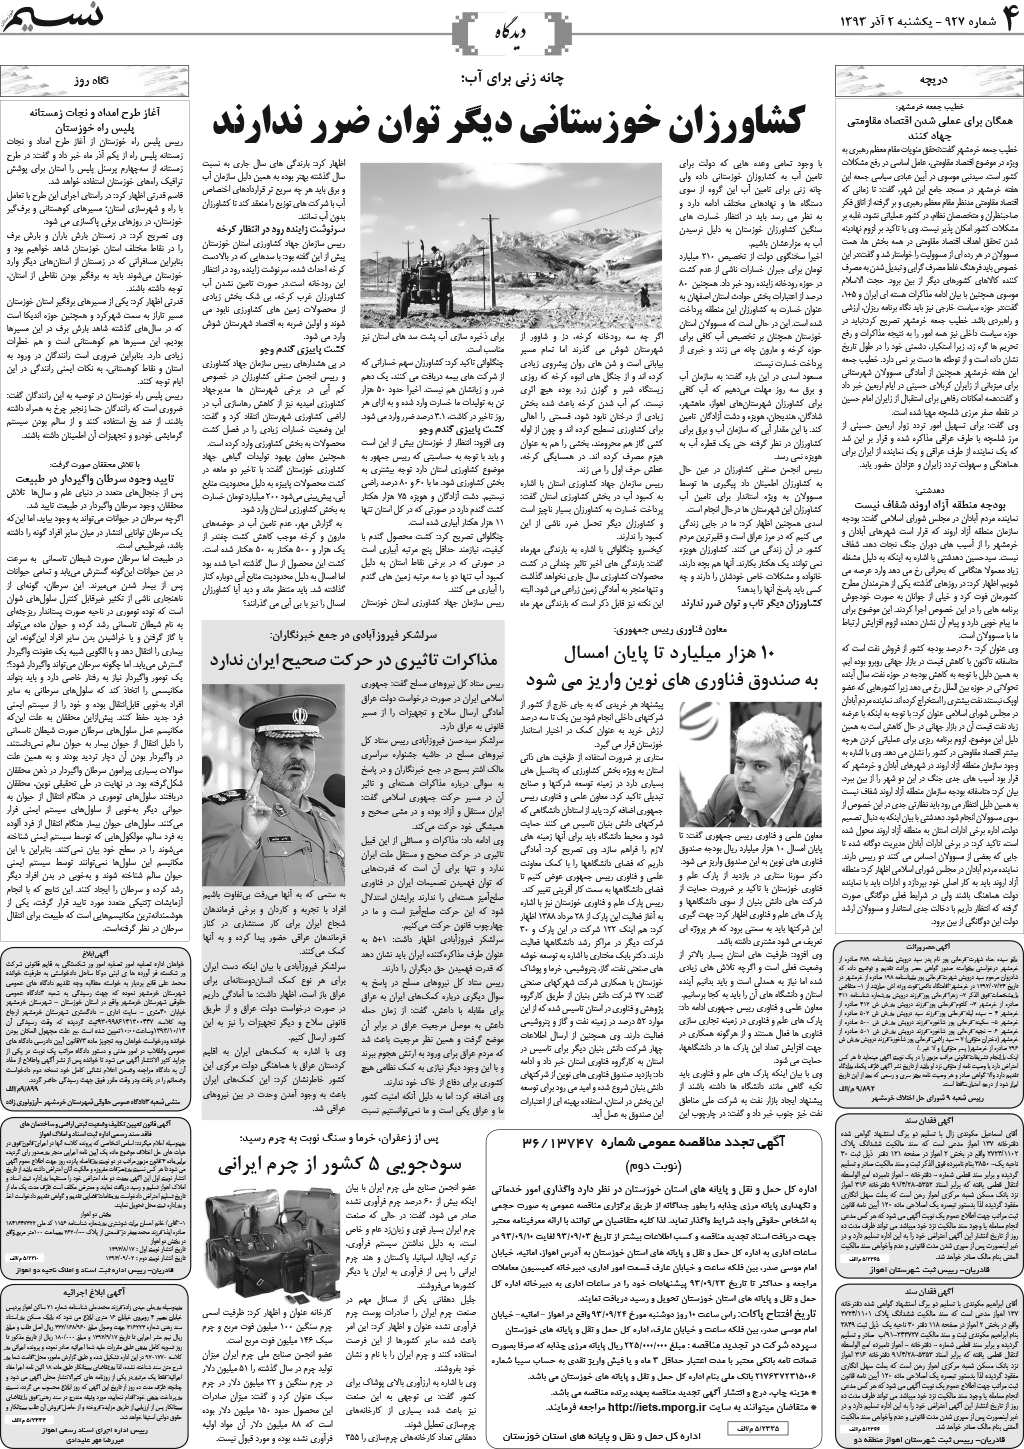 صفحه دیدگاه روزنامه نسیم شماره 927